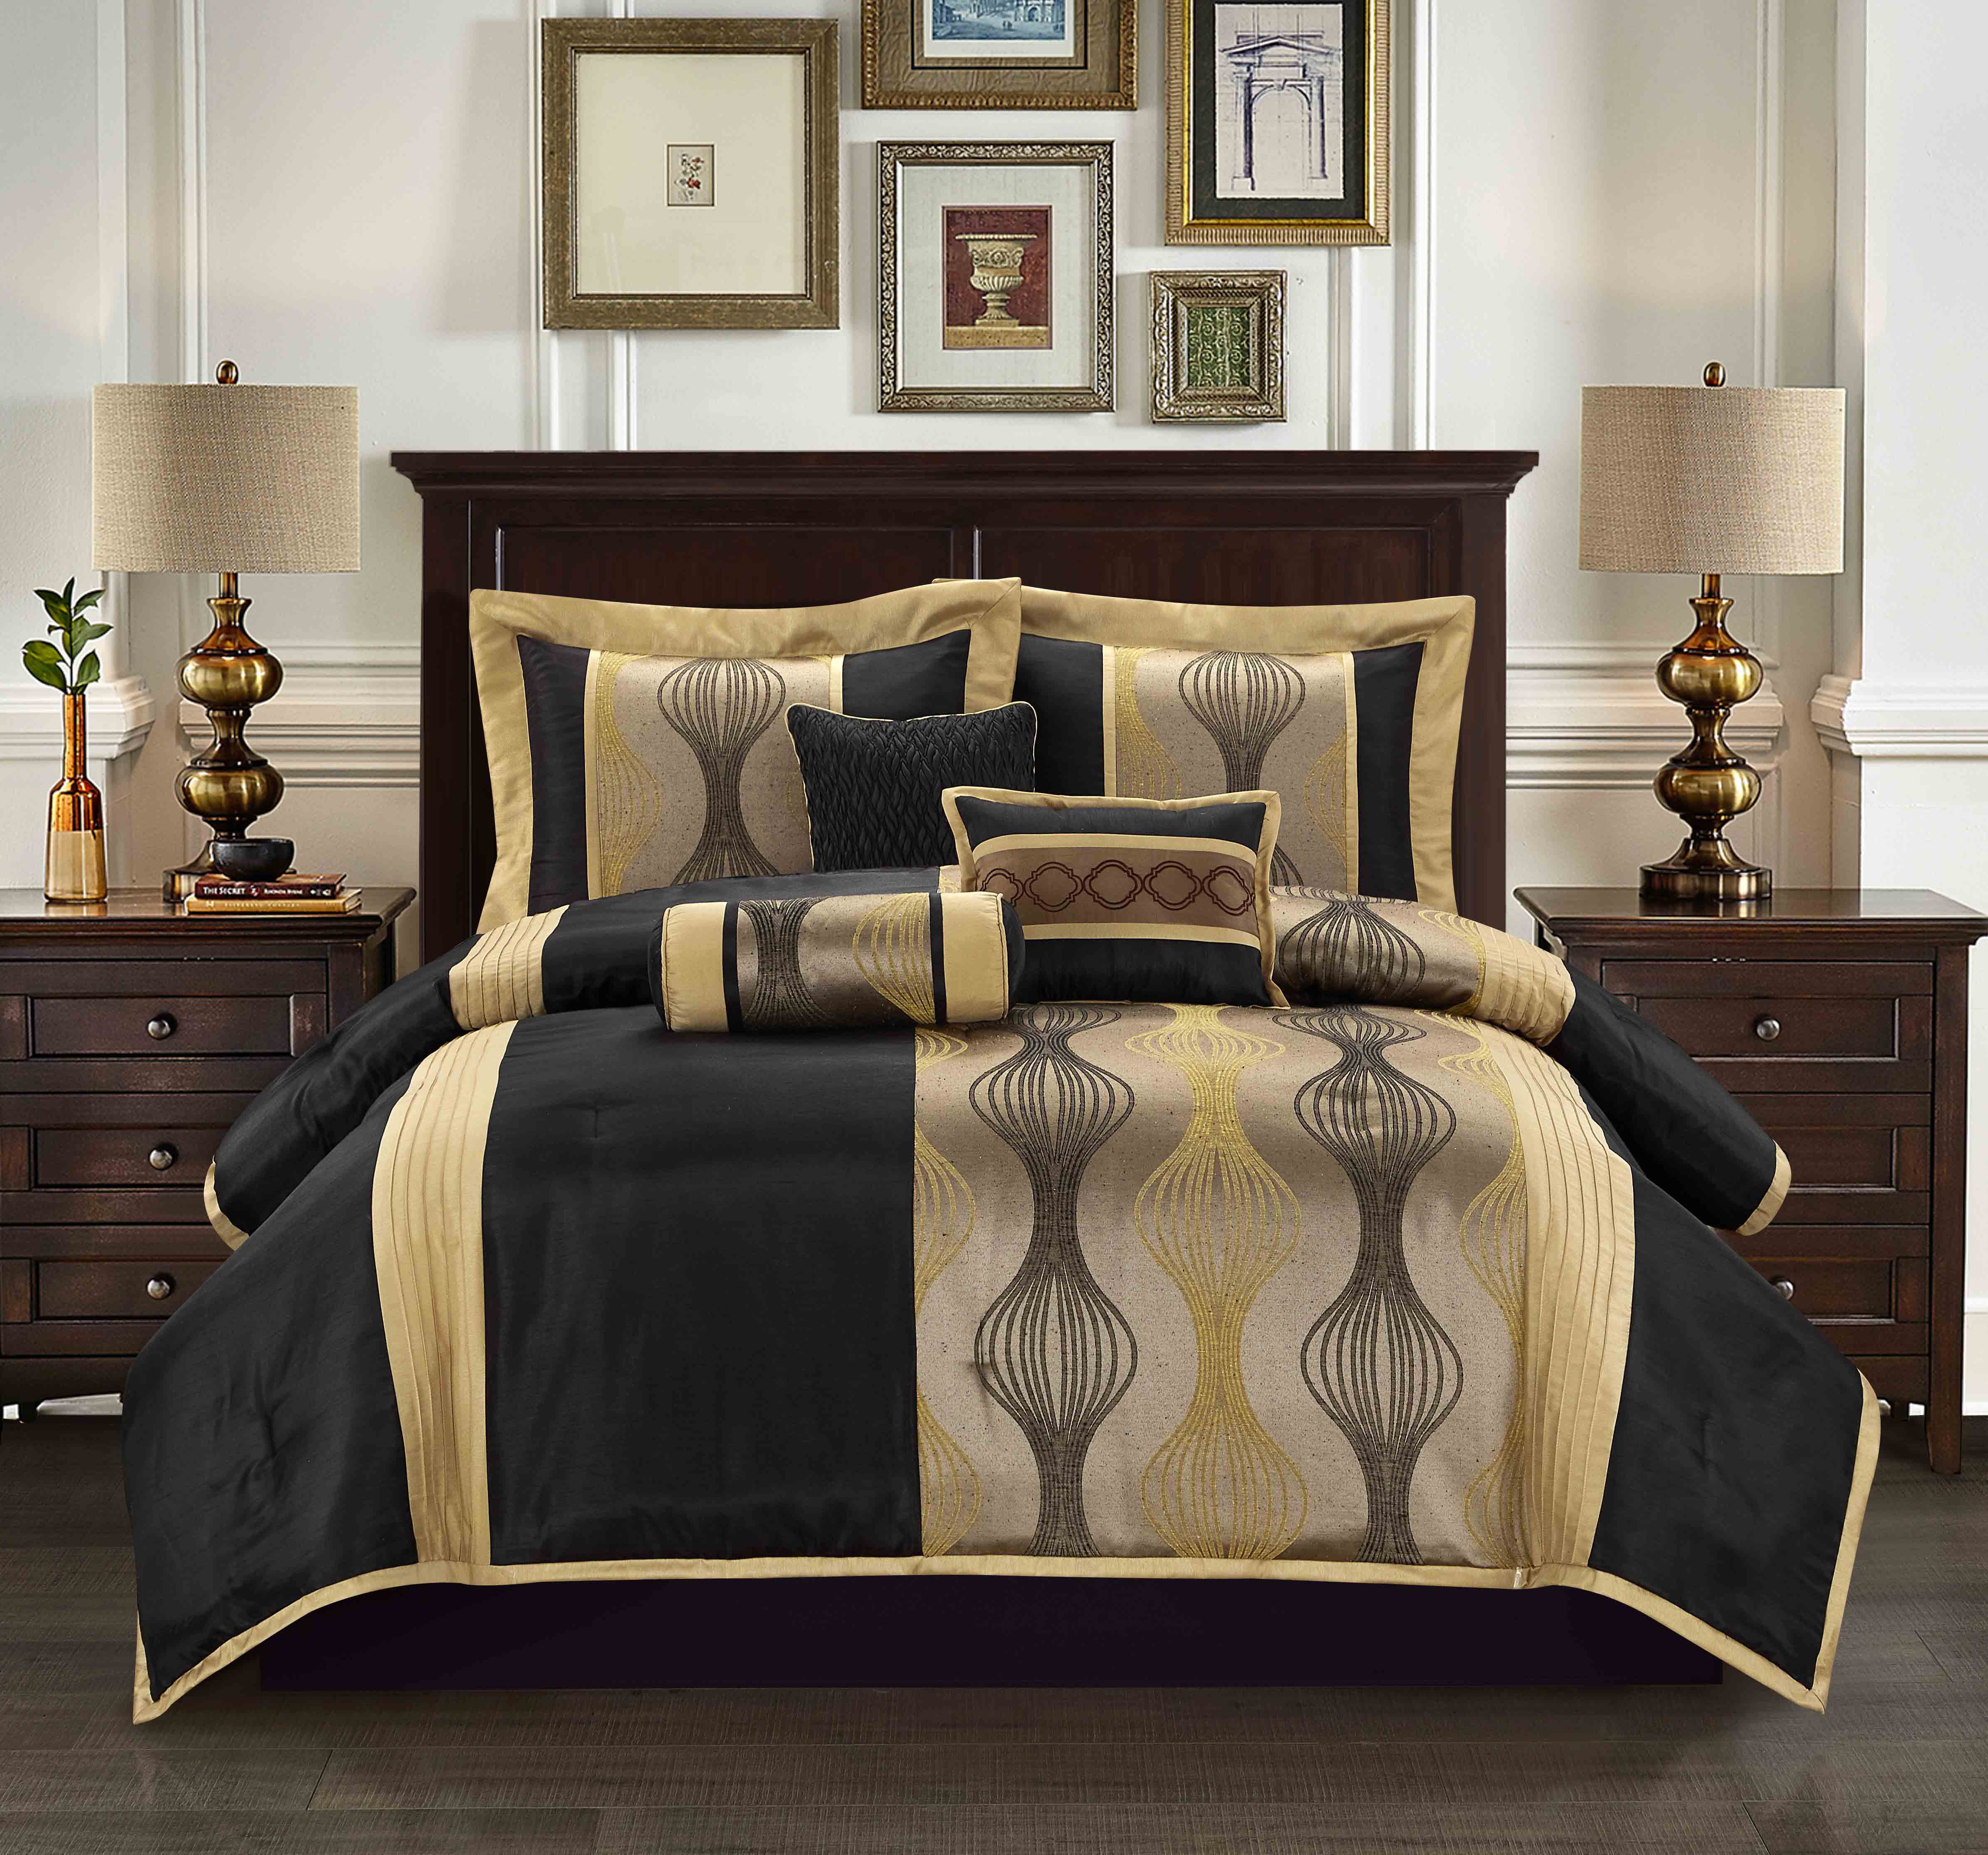 bed comforter sets queen